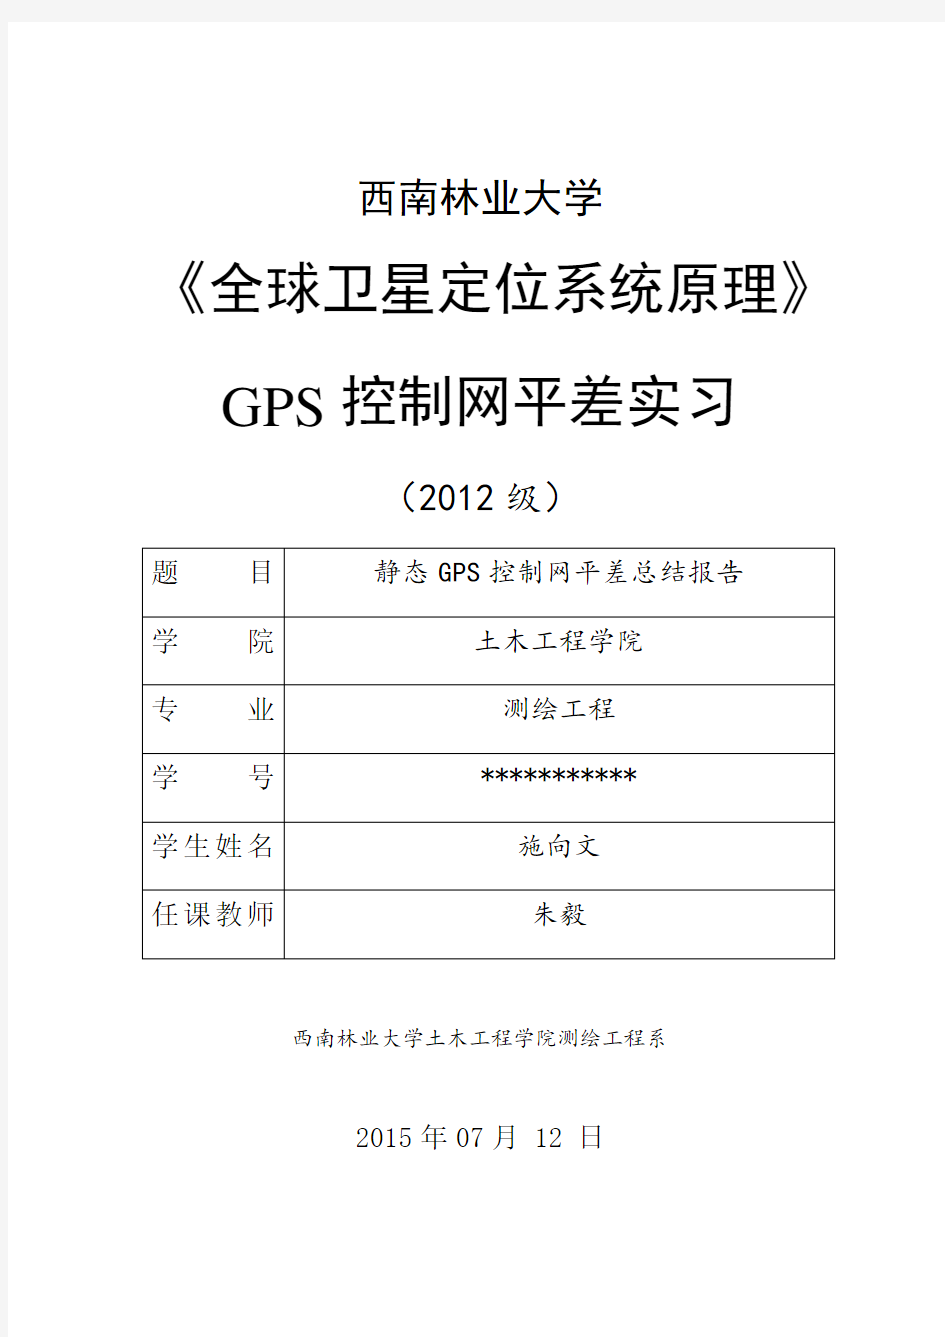 GPS控制网平差总结报告